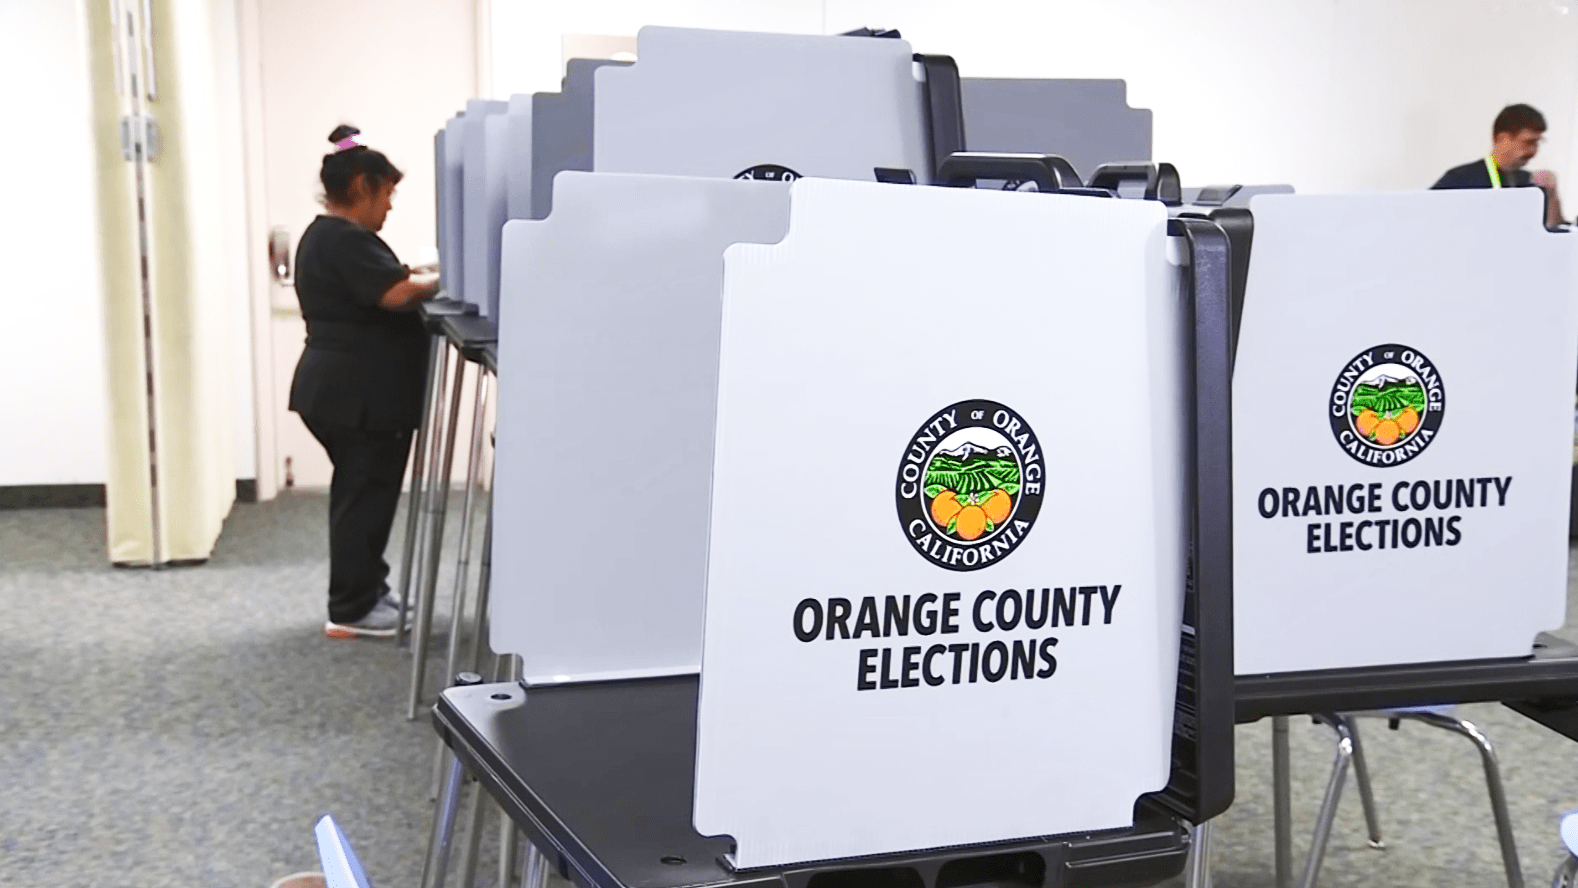 dos medidas en boleta electoral causan controversia en el condado de orange